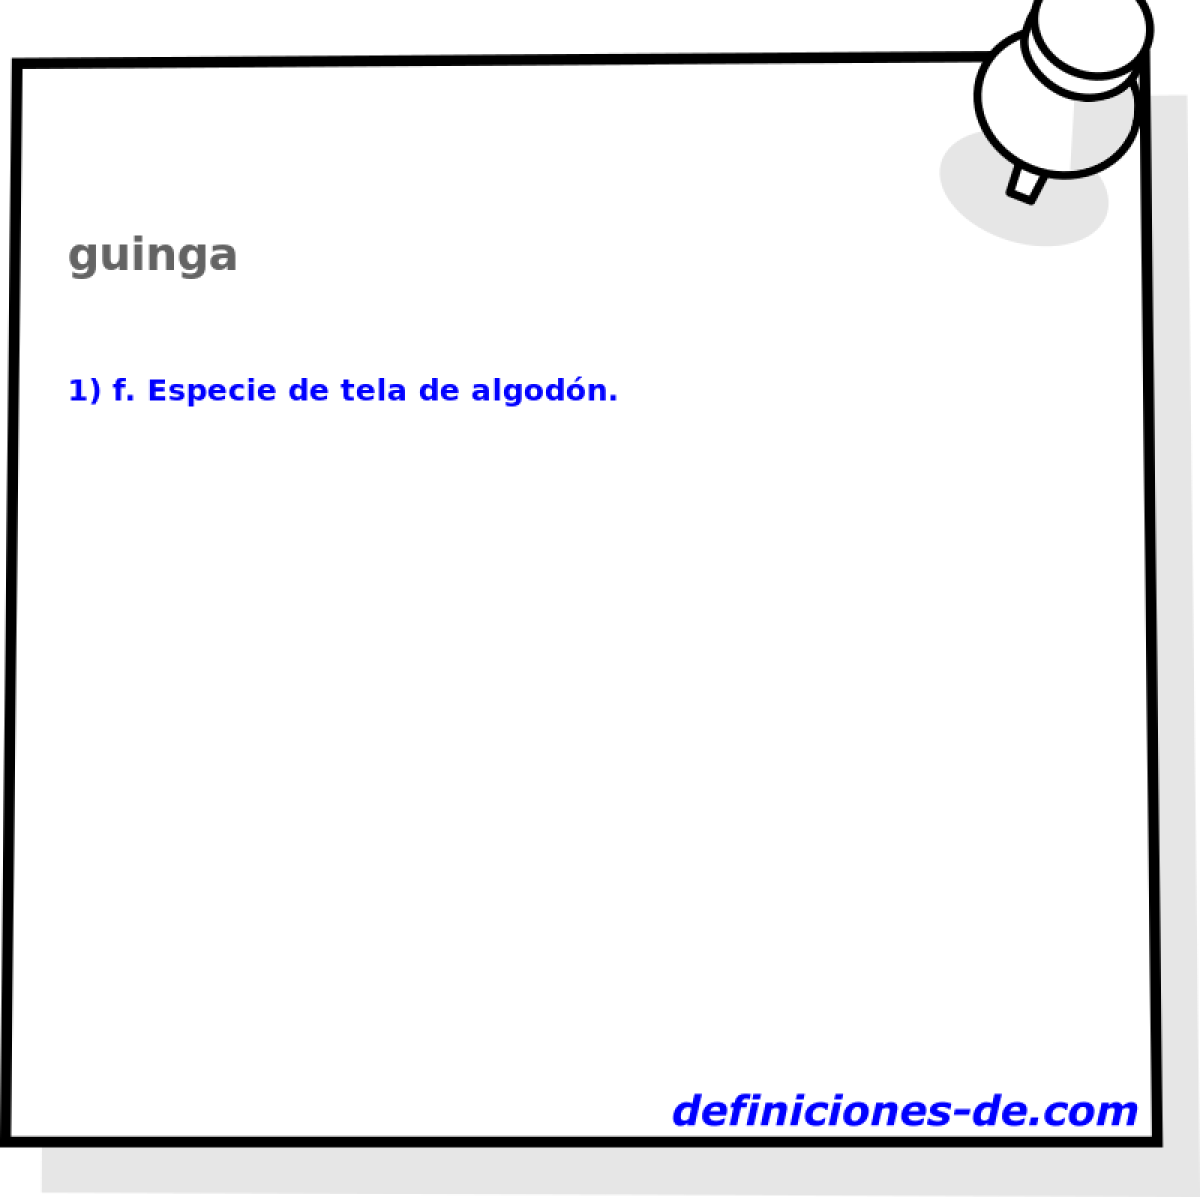 guinga 